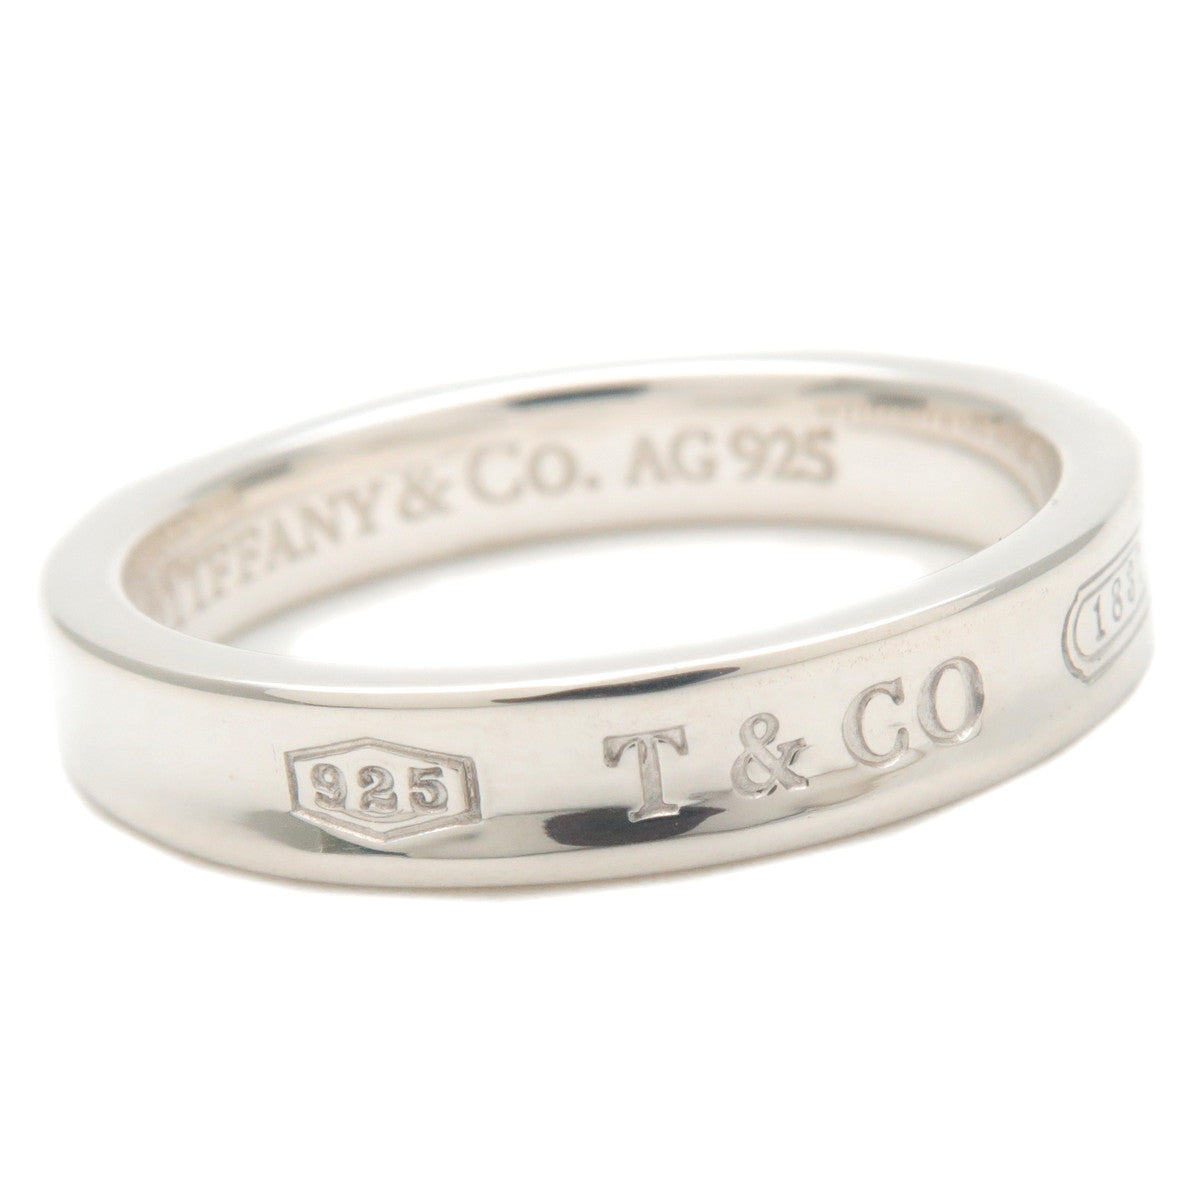 Tiffany&Co. 1837 Narrow Ring SV925 Silver #16.5 US8 HK17.5 EU57